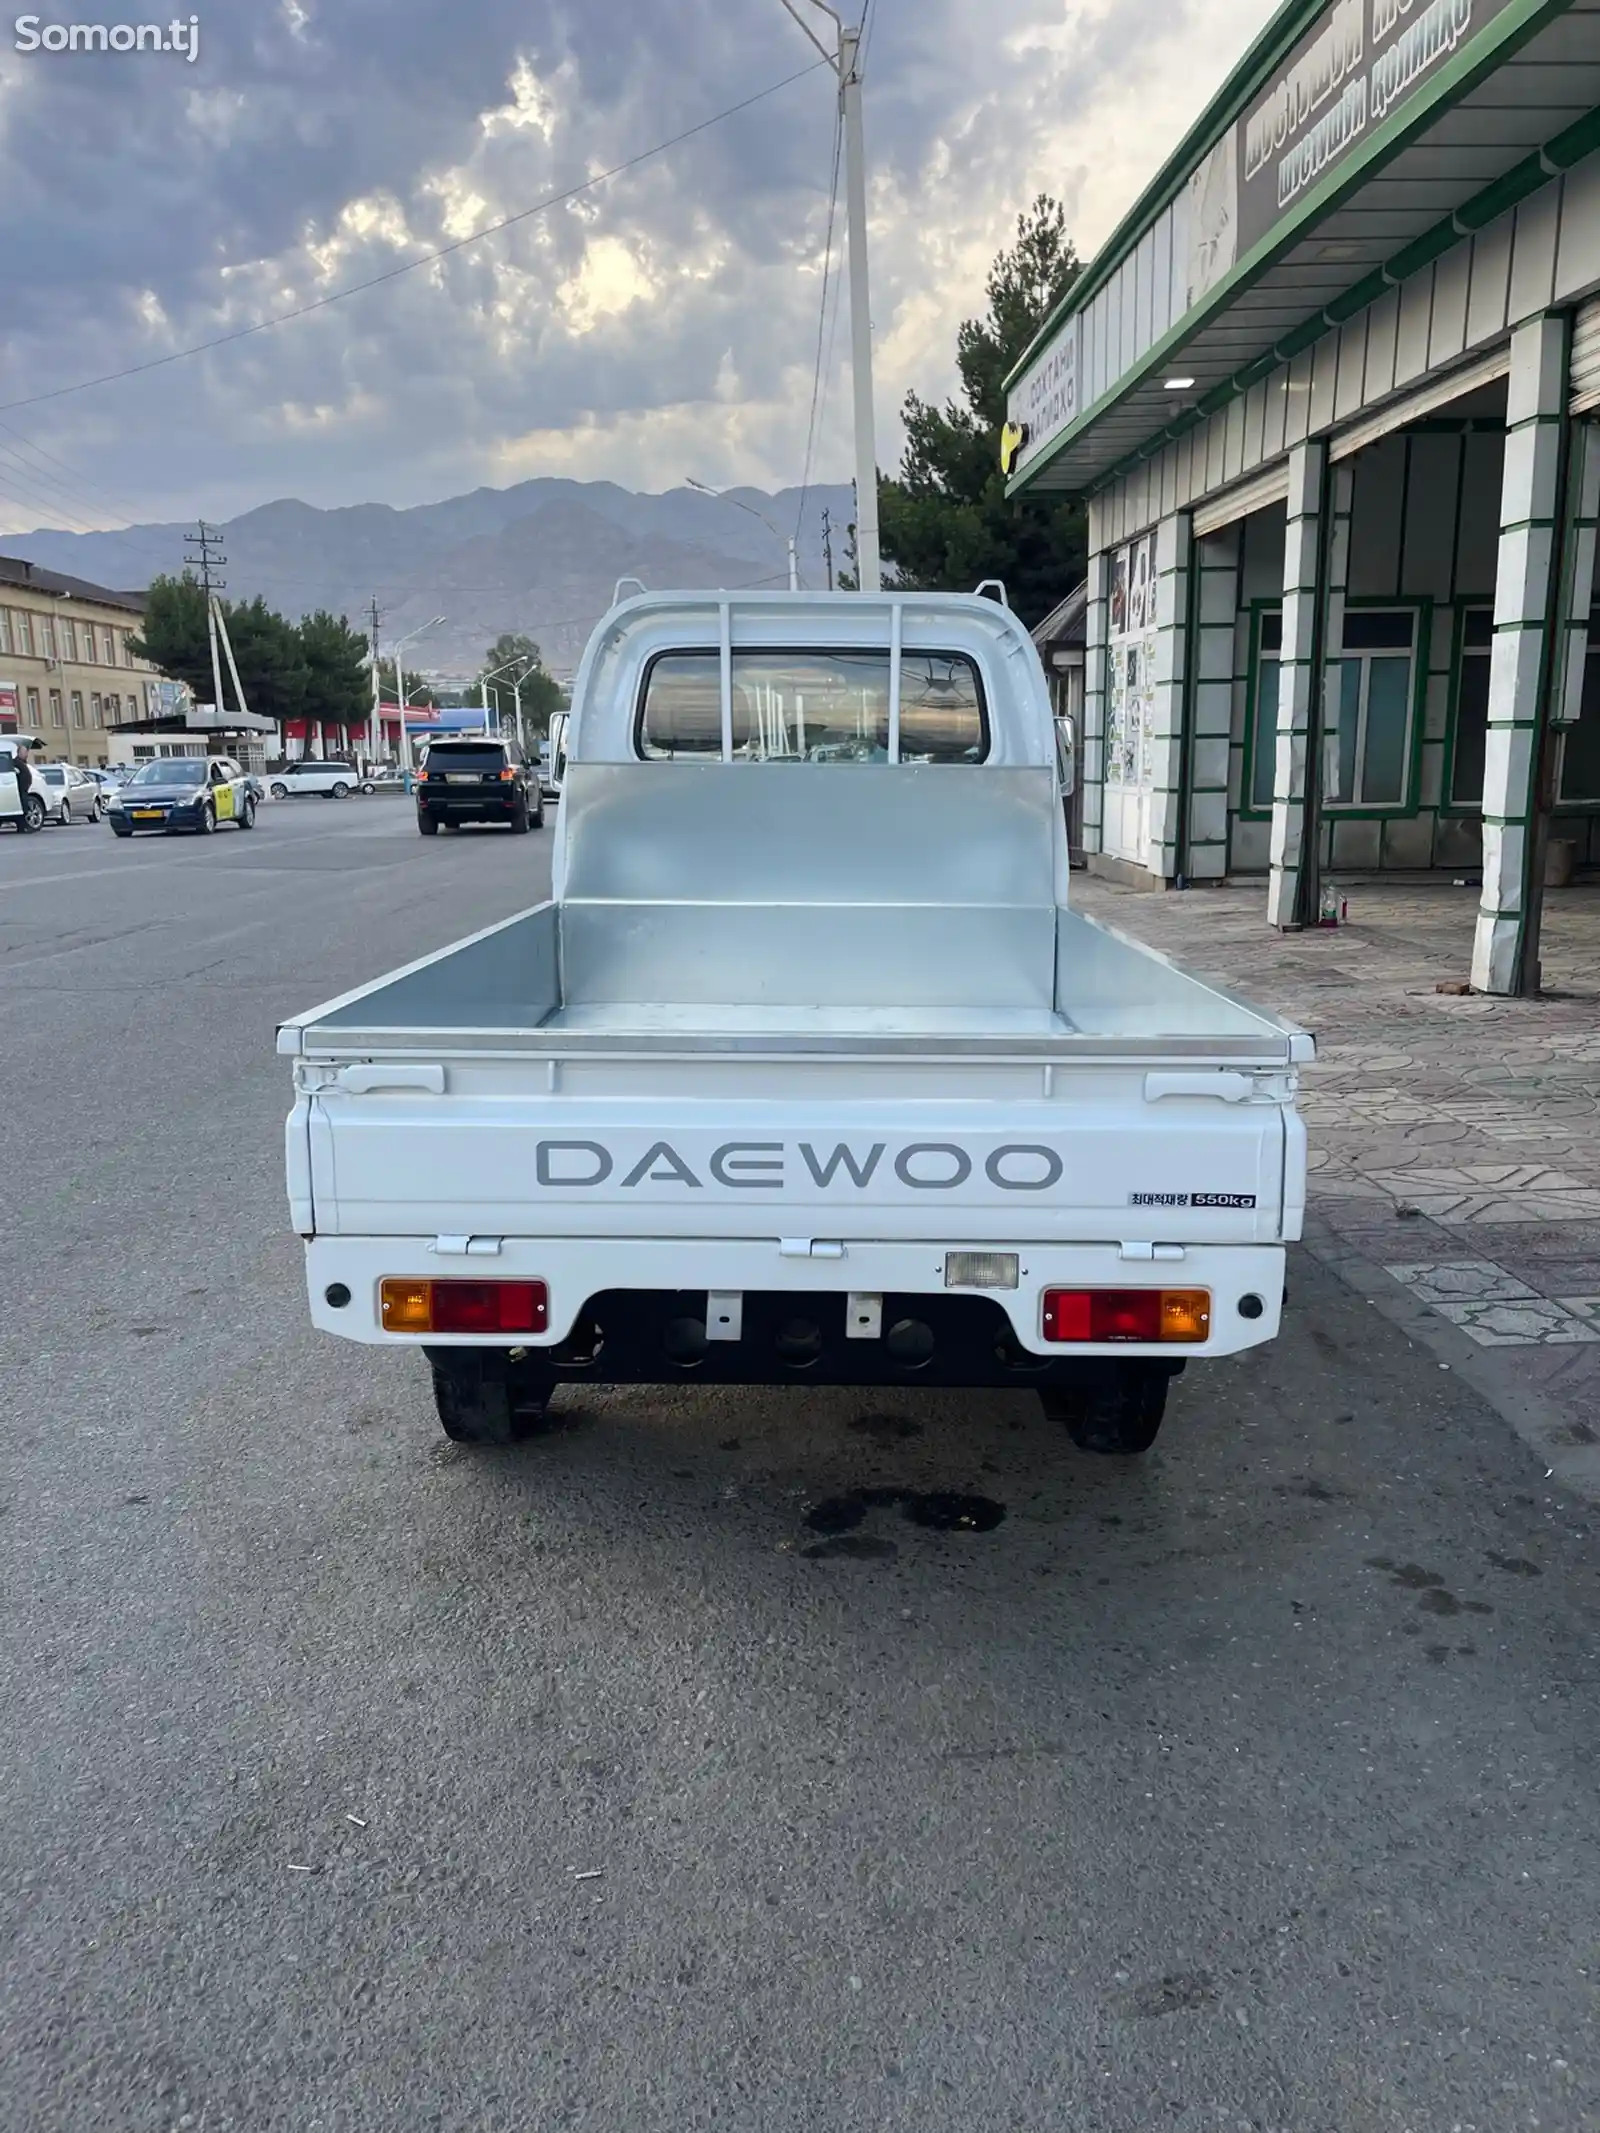 бортовой автомобиль Daewoo Labo, 2013-5